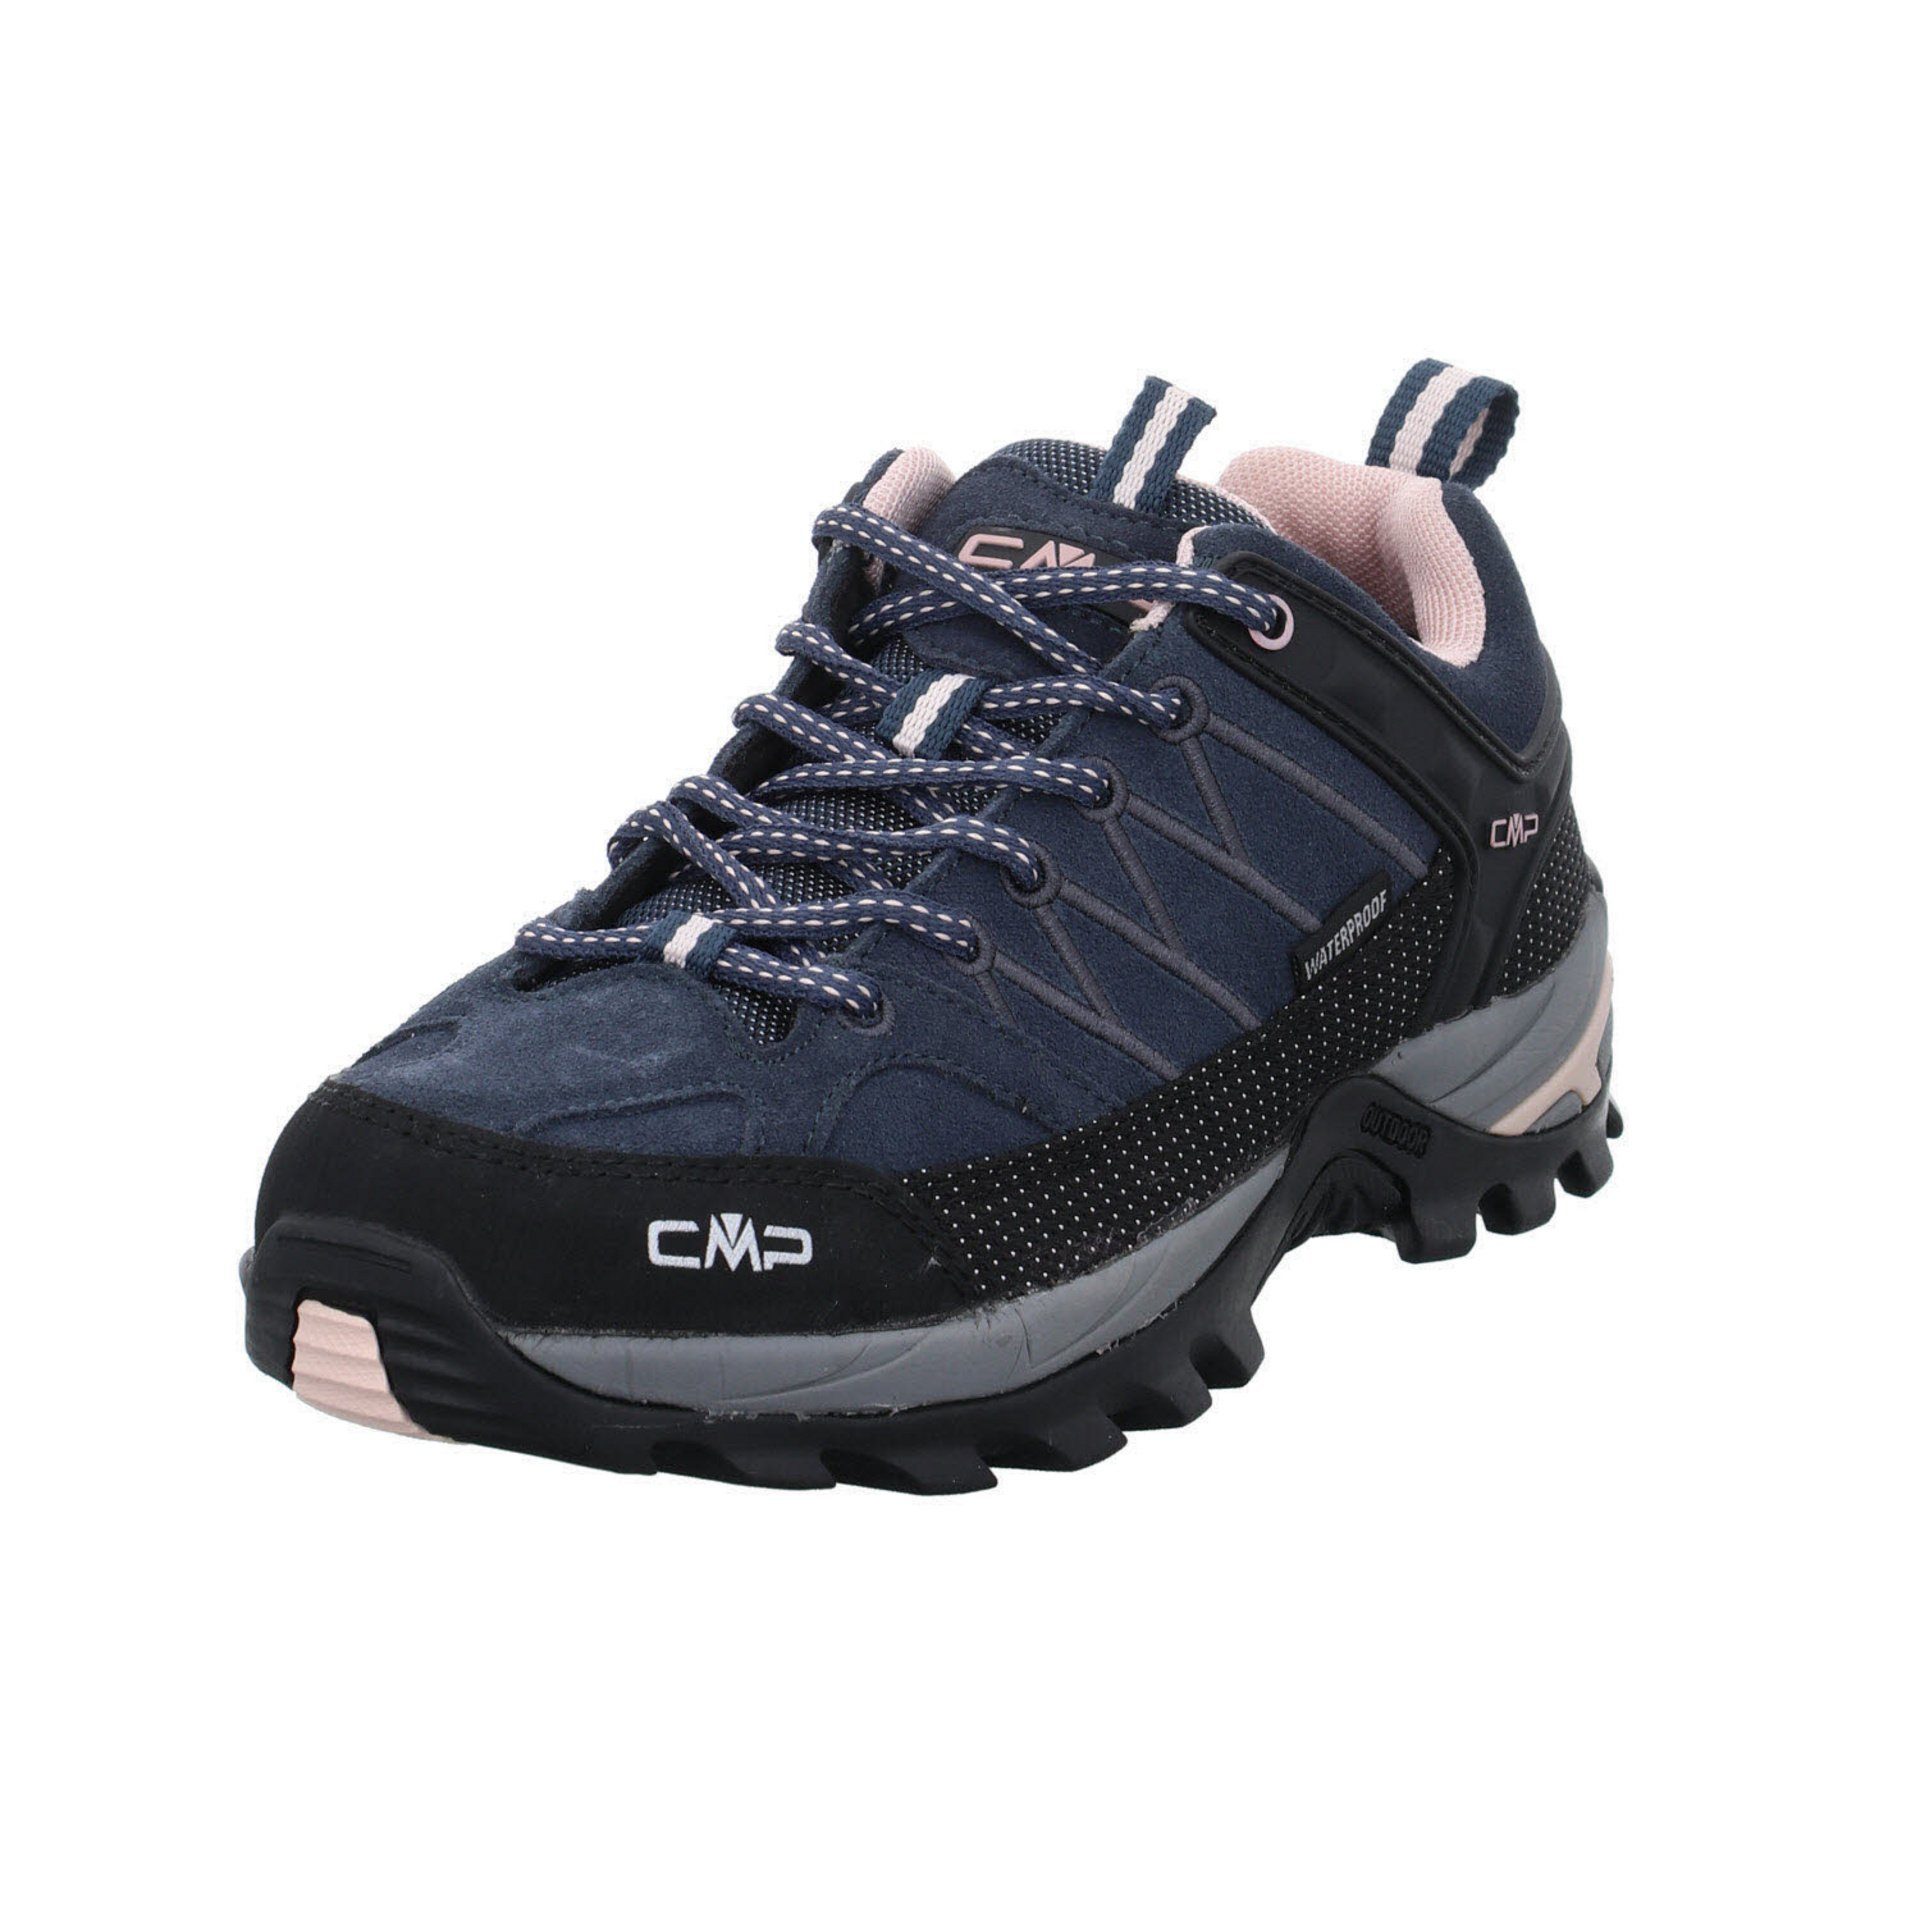 Riegel (201) Low Outdoorschuh Leder-/Textilkombination CMP Schuhe Outdoorschuh anthrazit Outdoor Damen